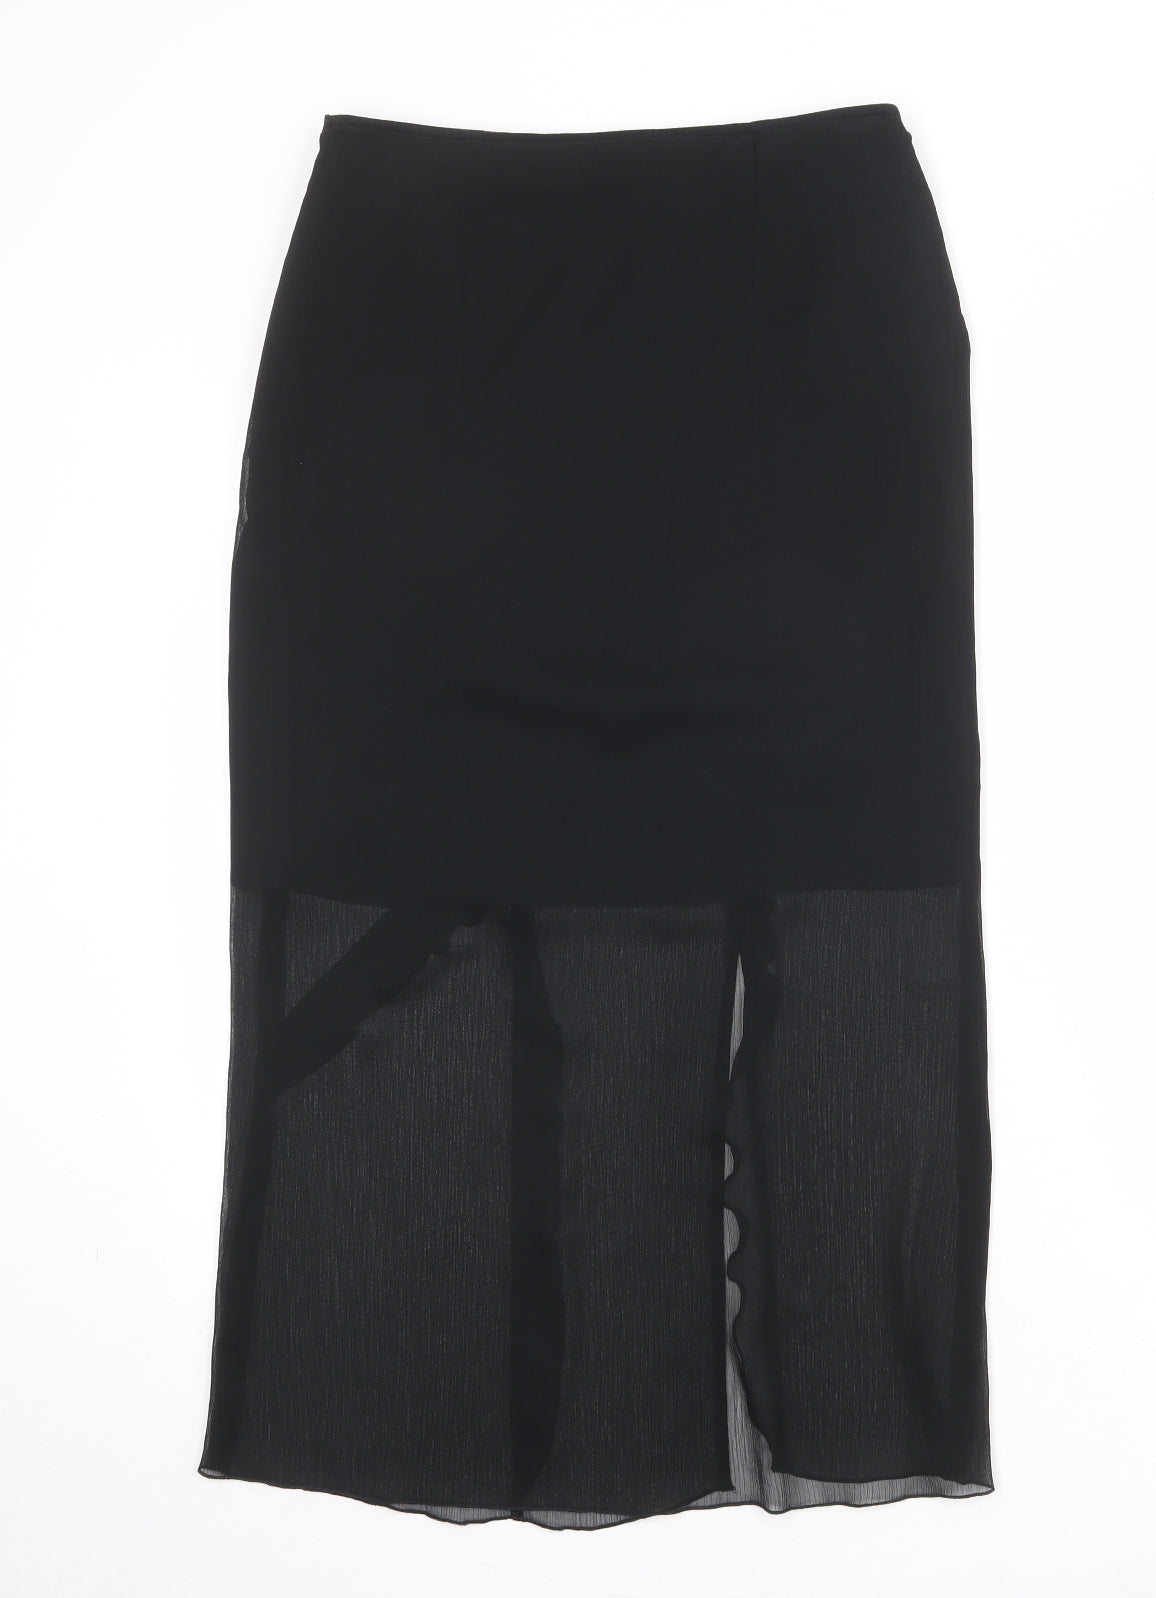 Karen Millen Womens Black Polyester A-Line Skirt Size 10 Zip - Sheer overlay